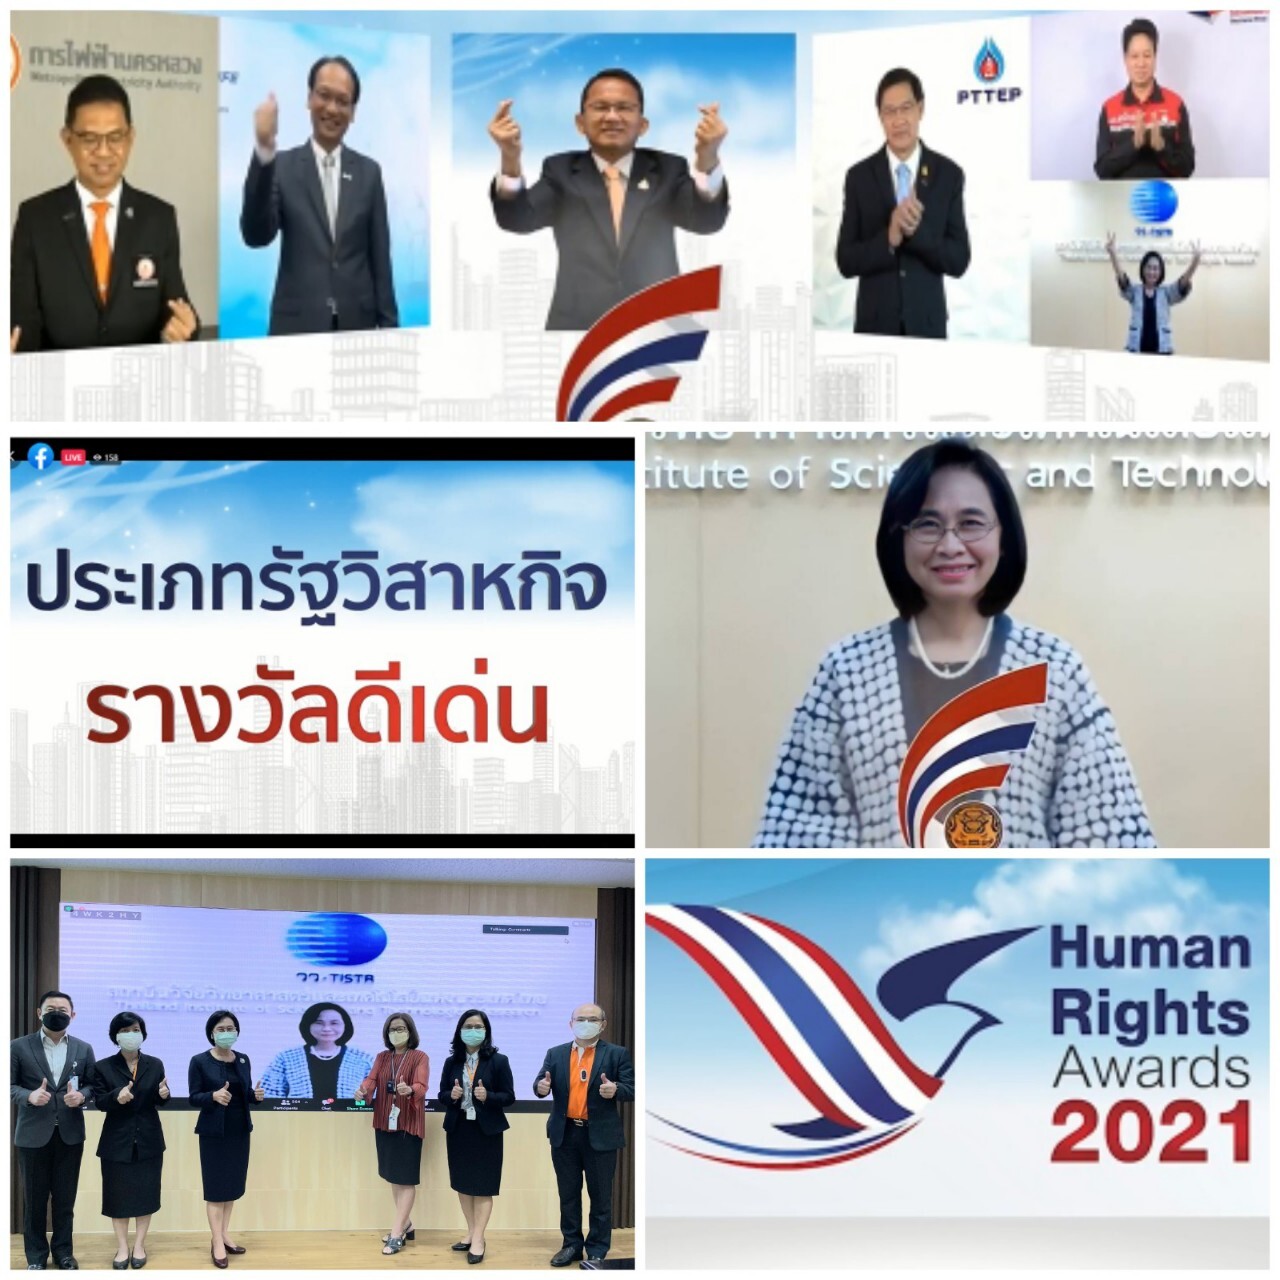 วว. รับรางวัลดีเด่นองค์กรต้นแบบด้านสิทธิมนุษยชน ประจำปี 2564 จากผลงานพัฒนาเศรษฐกิจชุมชน BCG Model & Thai Cosmetopoeia